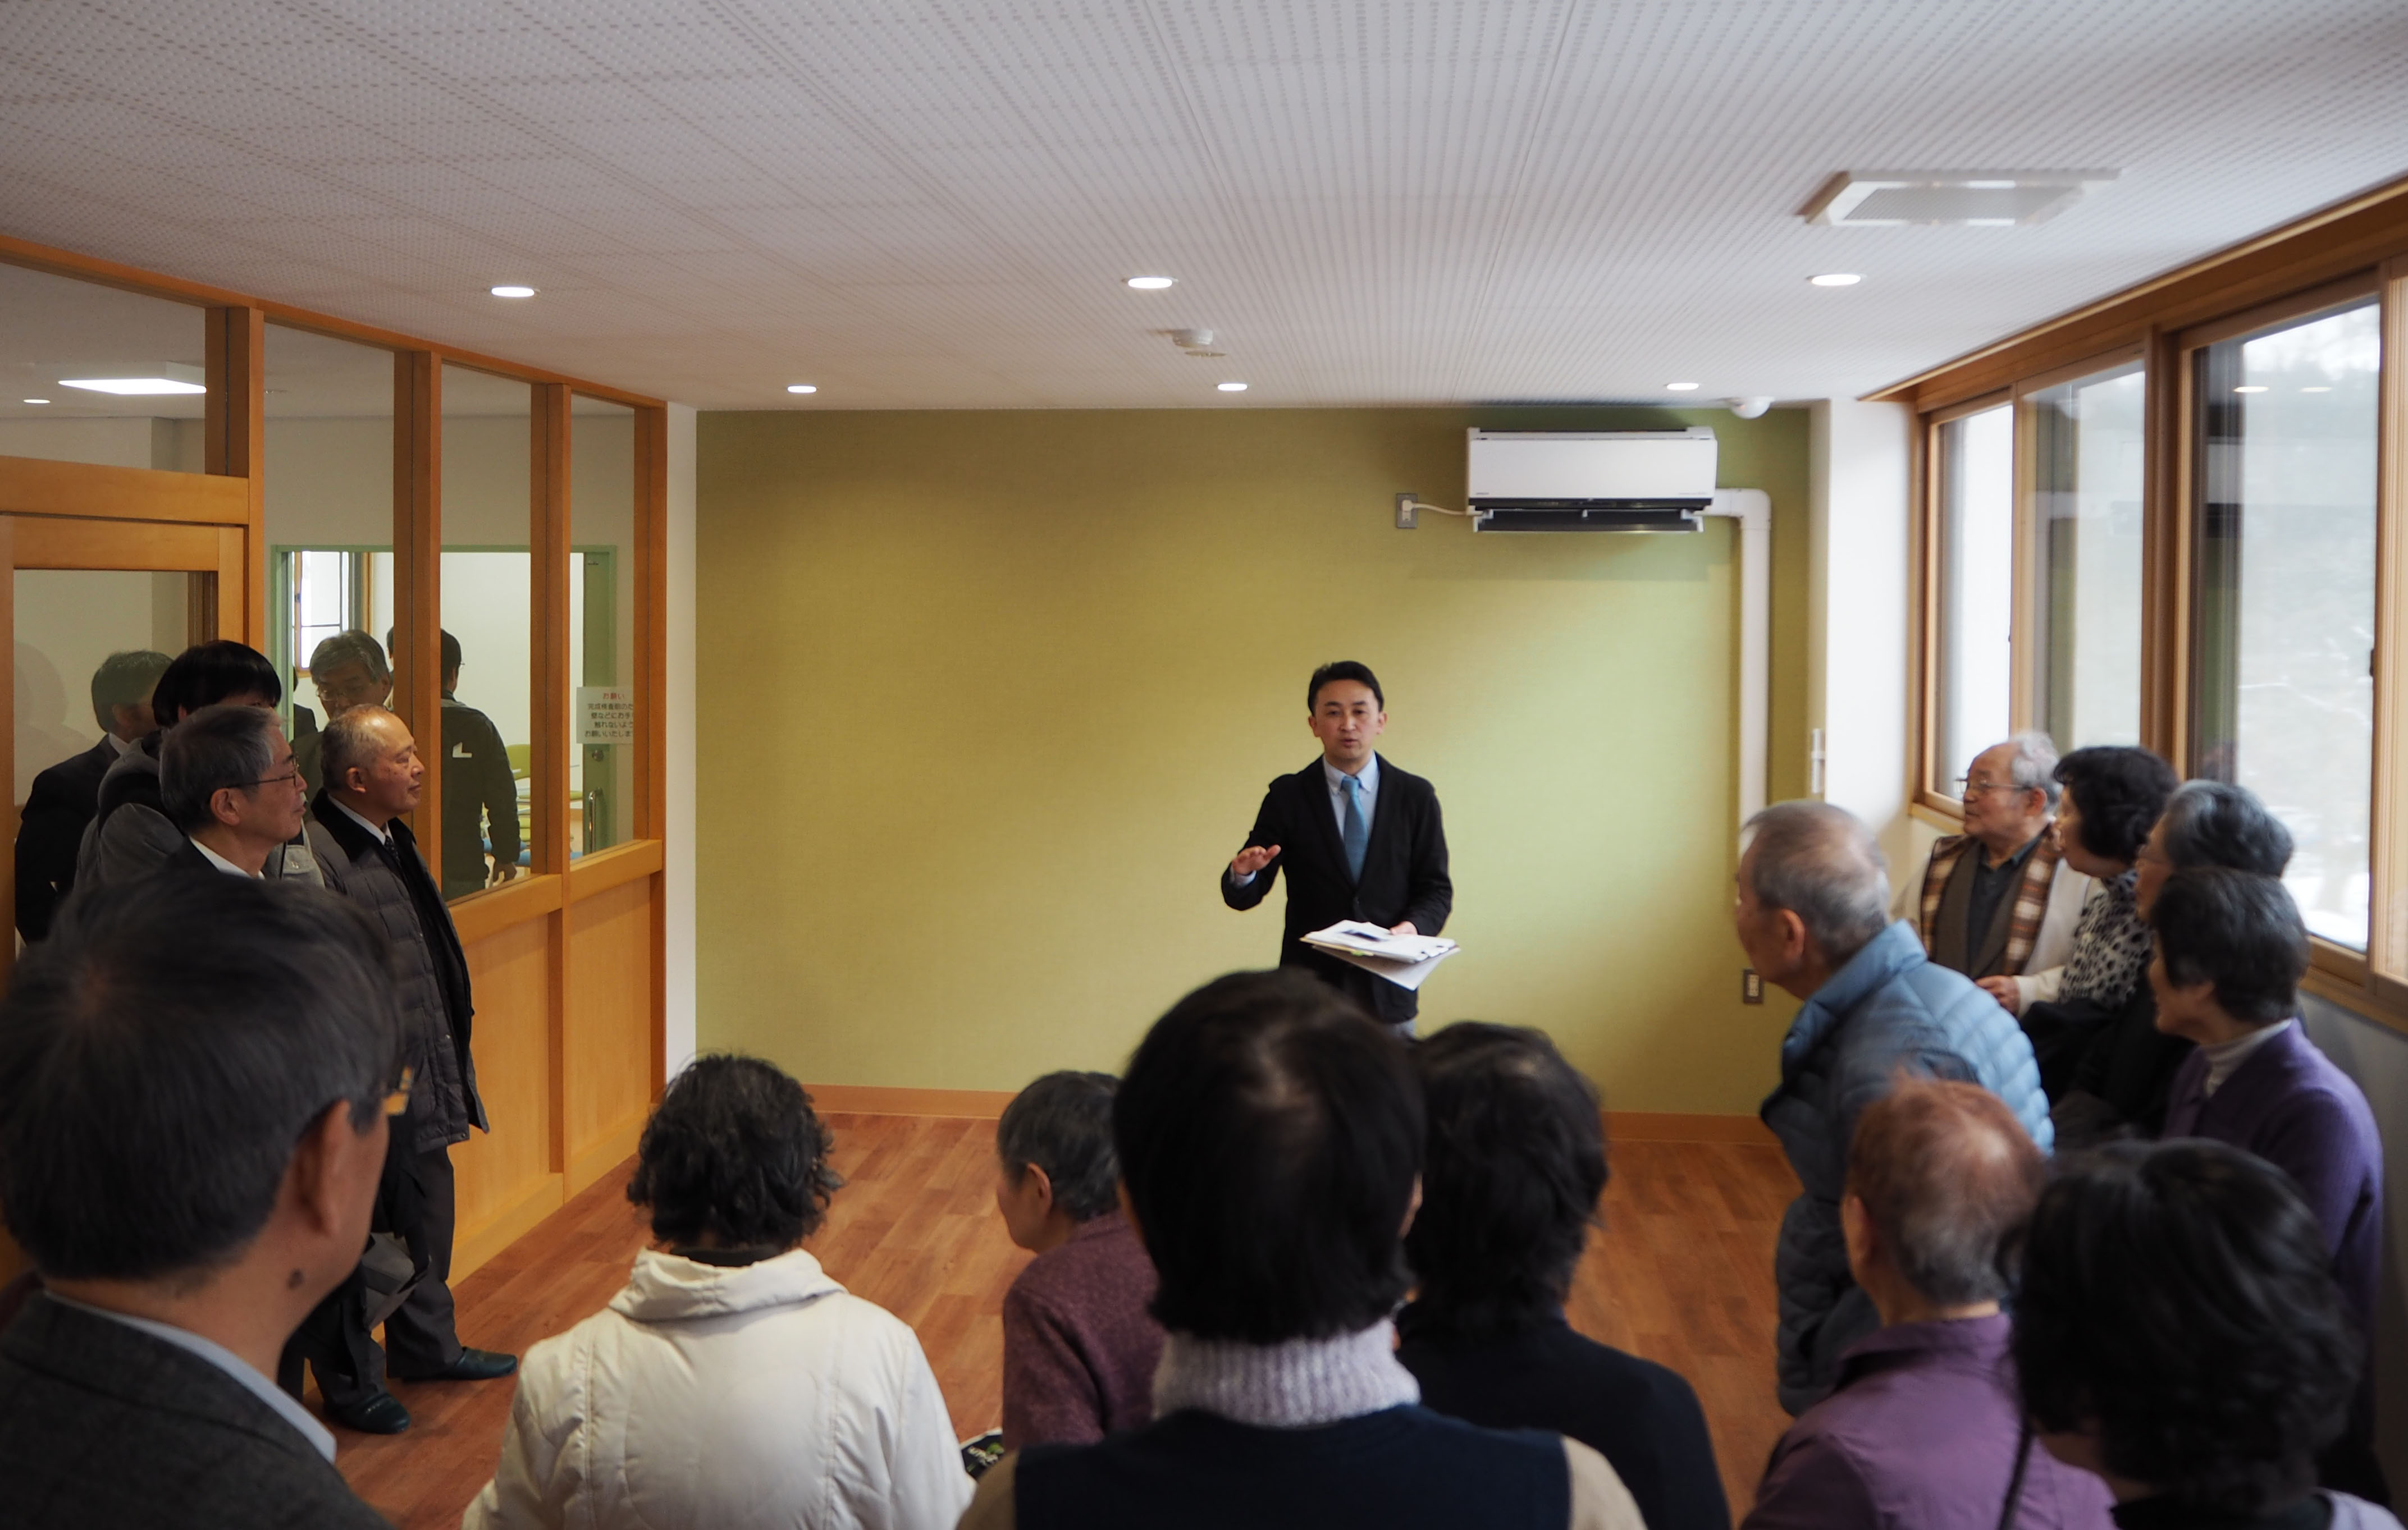 神岡町北部会館の全館を改修し、KAGRAの研究スペースとして拡張